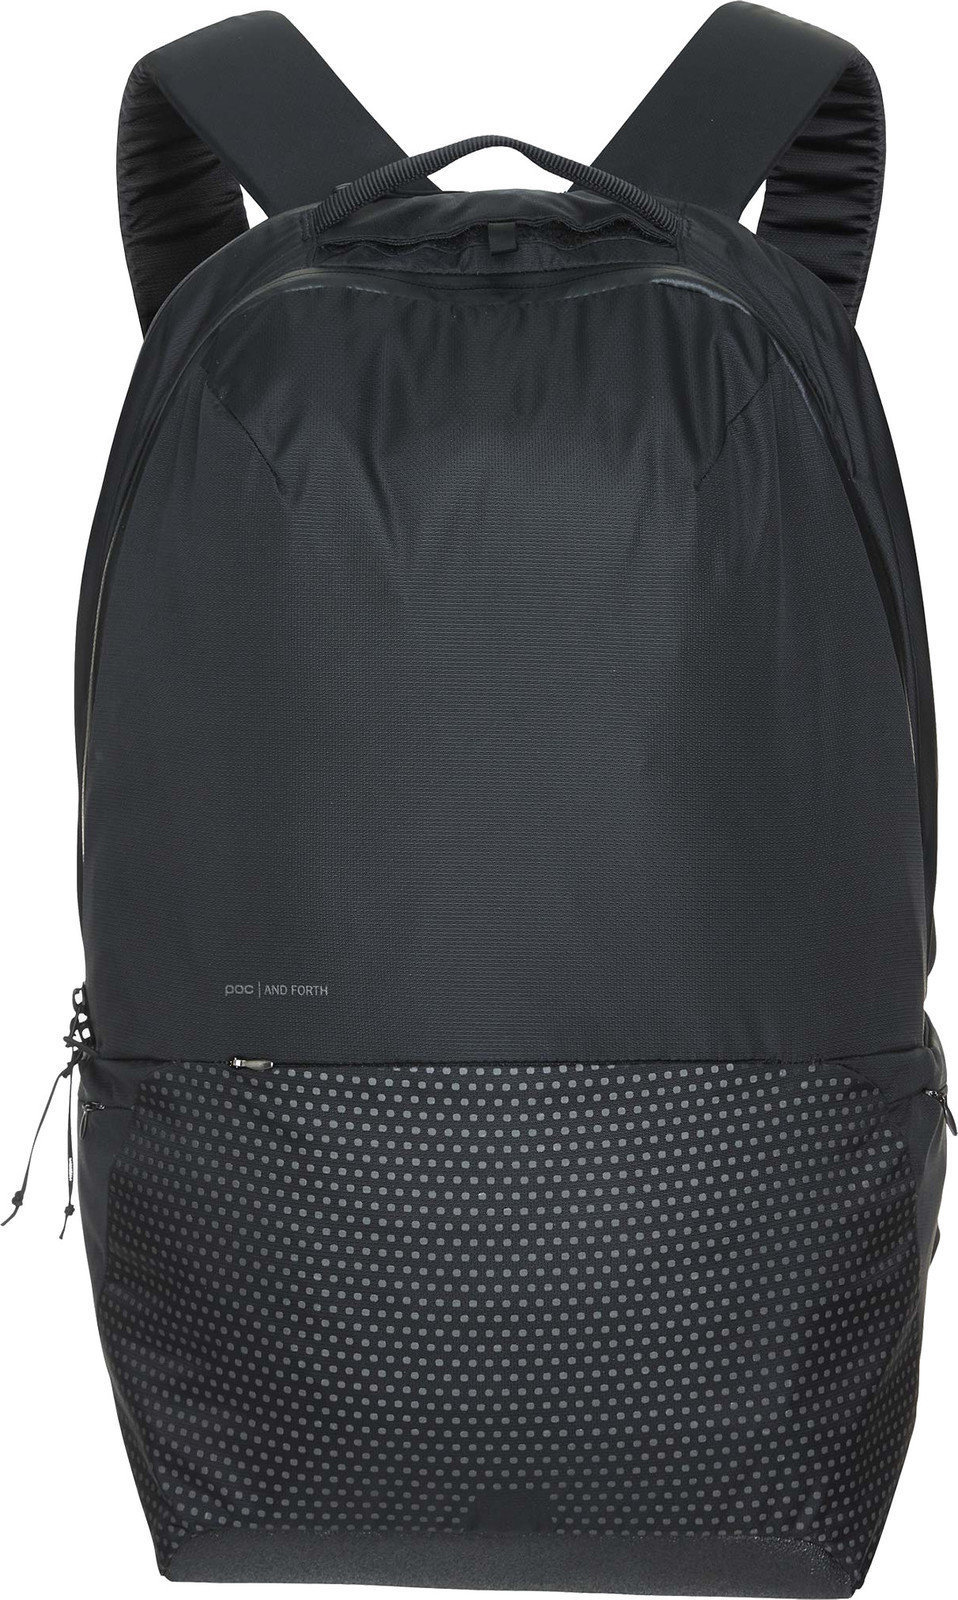 Lifestyle Backpack / Bag POC Berlin Uranium Black 24 L Backpack